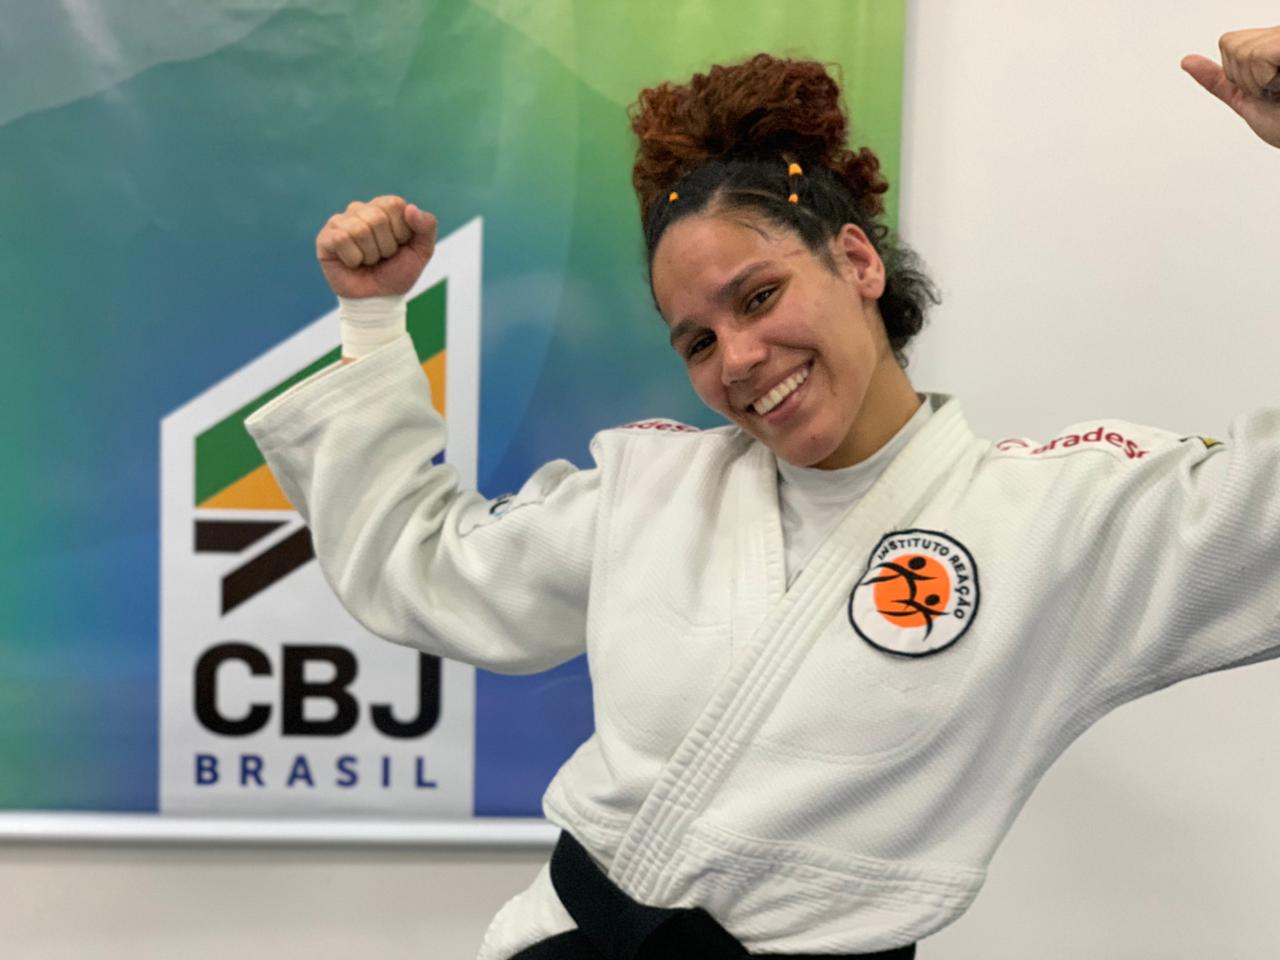 Judoca patrocinada pela Unimed Nova Iguaçu garante vaga na Seleção Brasileira